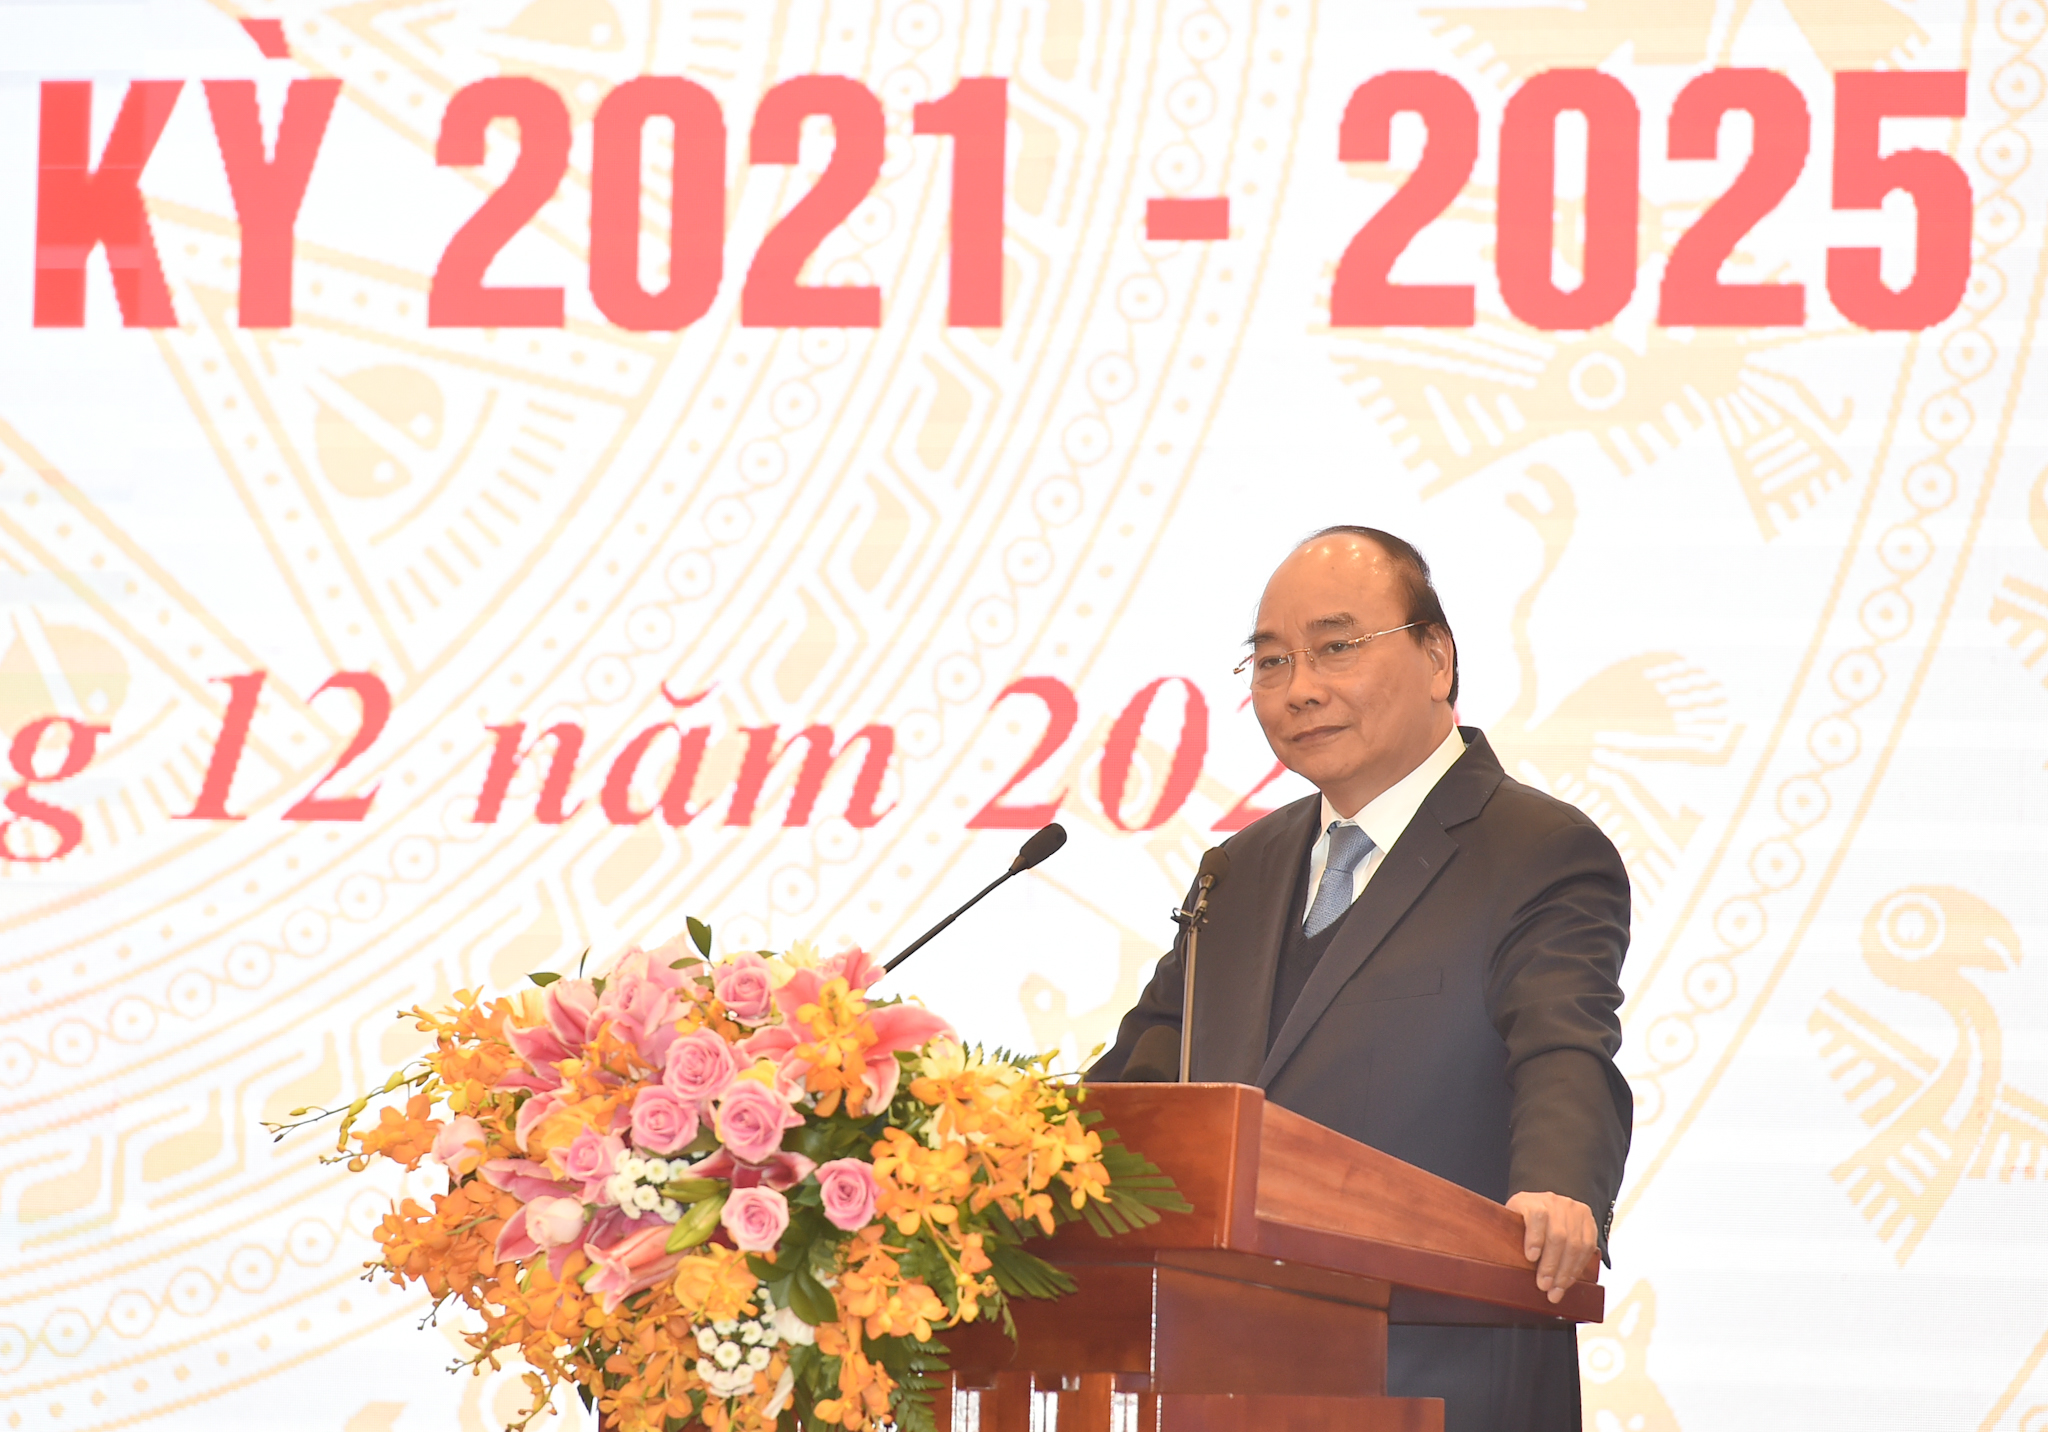 Thủ tướng Nguyễn Xuân Phúc phát biểu chỉ đạo tại Hội nghị trực tuyến triển khai công tác tư pháp năm 2021, định hướng nhiệm kỳ 2021-2025 của Bộ Tư pháp vào sáng nay, 23/12. Ảnh: VGP/Quang Hiếu 